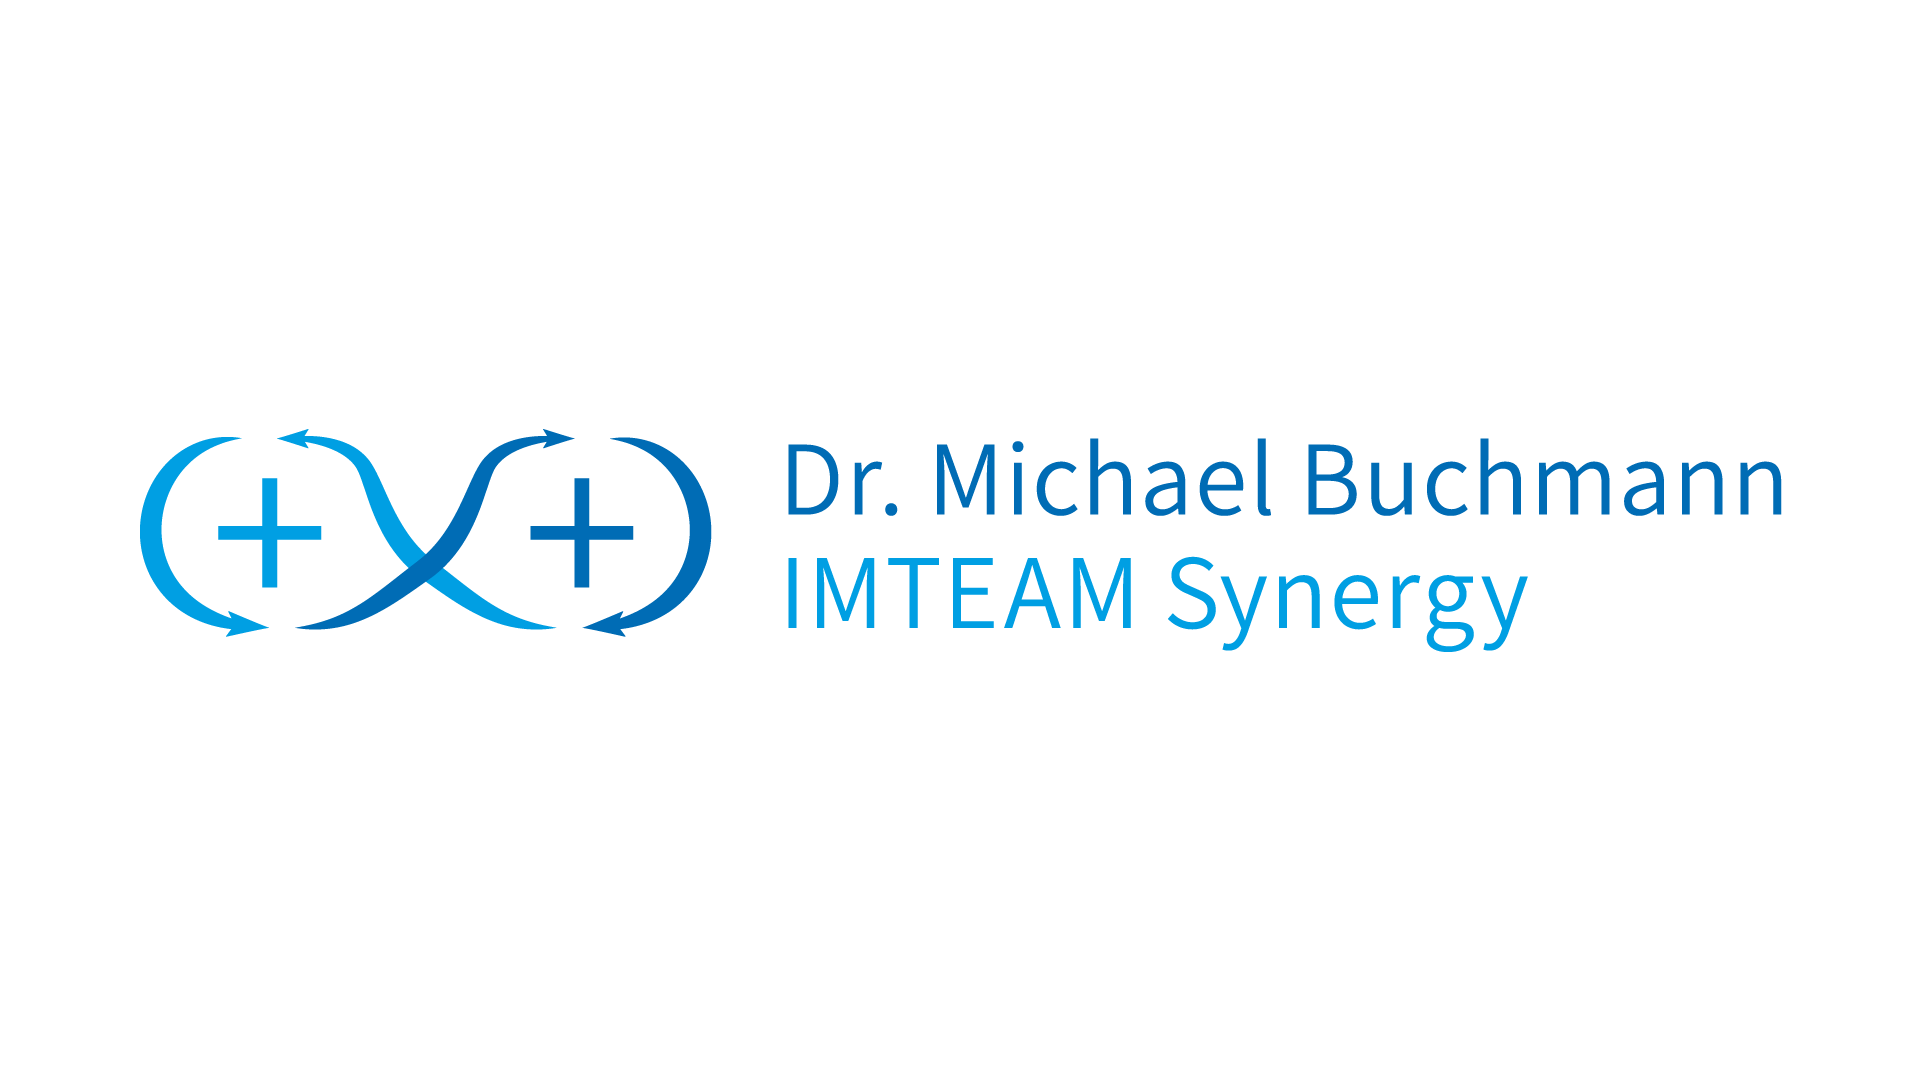 imteam logo entwicklung für dr. michael buchmann